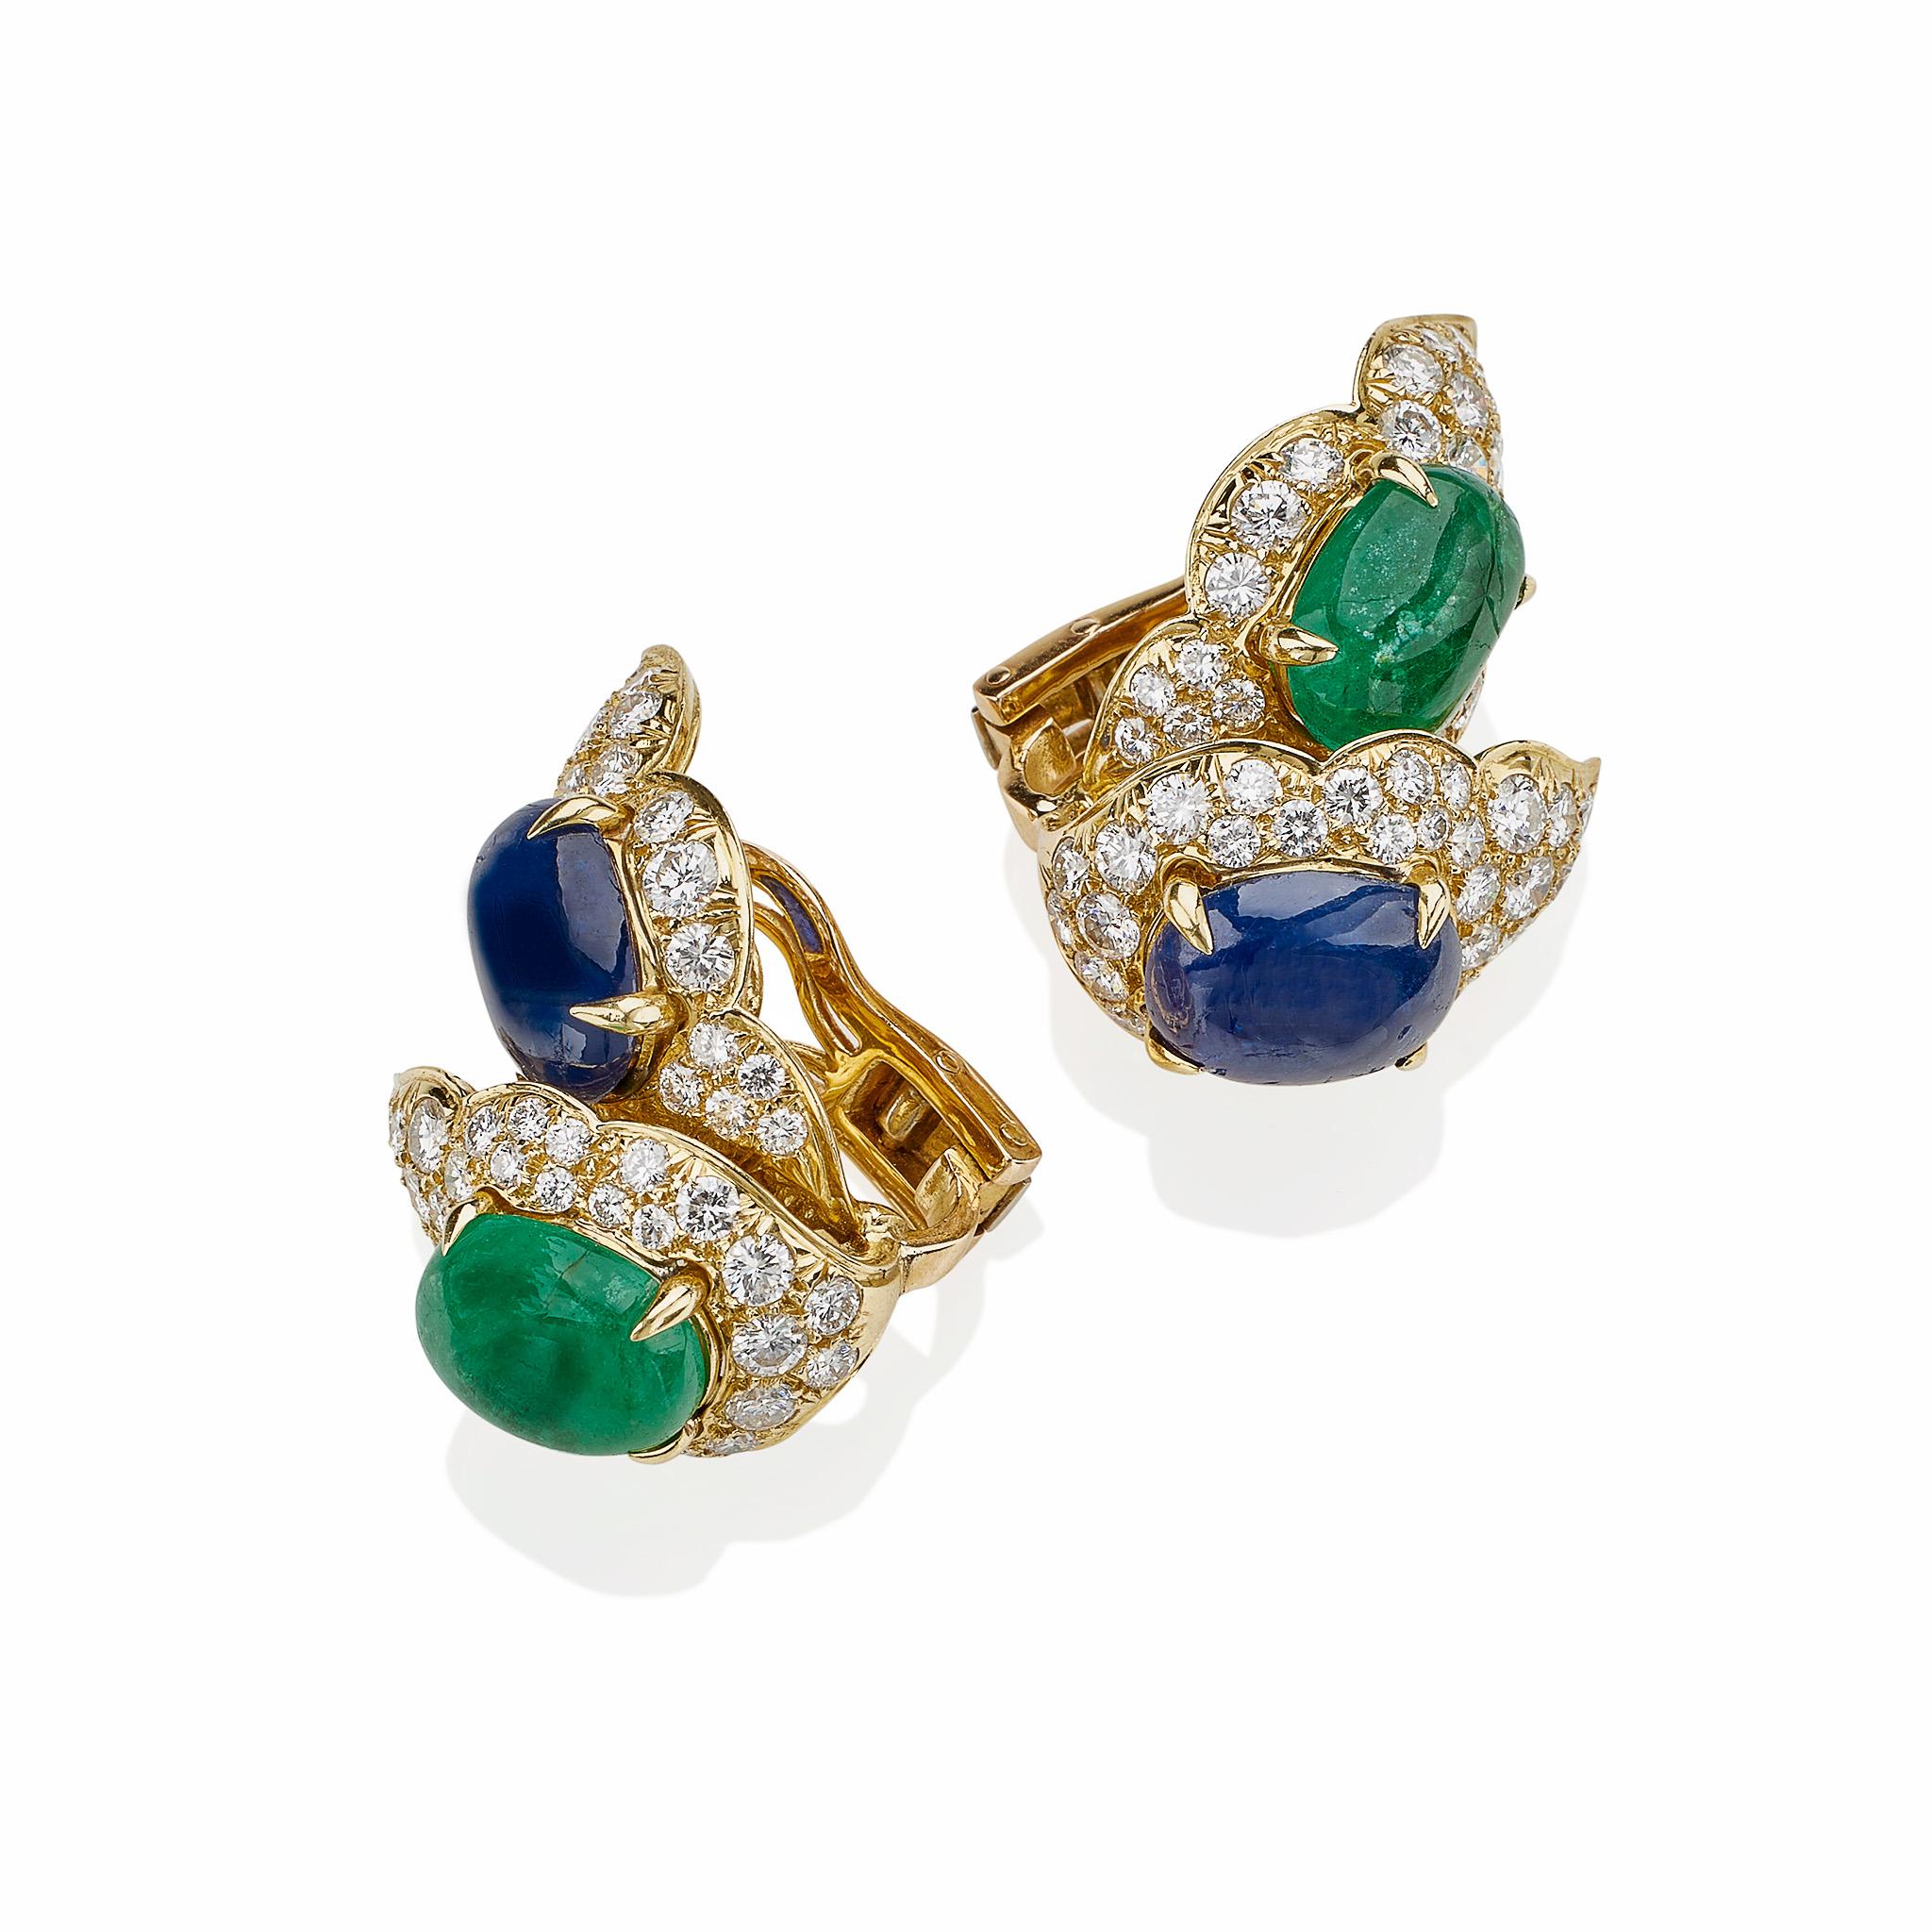 Diese Clip-Ohrringe aus 18 Karat Gold, Smaragd, Saphir und Diamant von Bulgari stammen aus den 1980er Jahren. In Form eines Doppelblattes gestaltet, zentriert jedes Blatt einen ovalen Cabochon-Smaragd oder -Saphir, umrahmt von runden Diamanten im